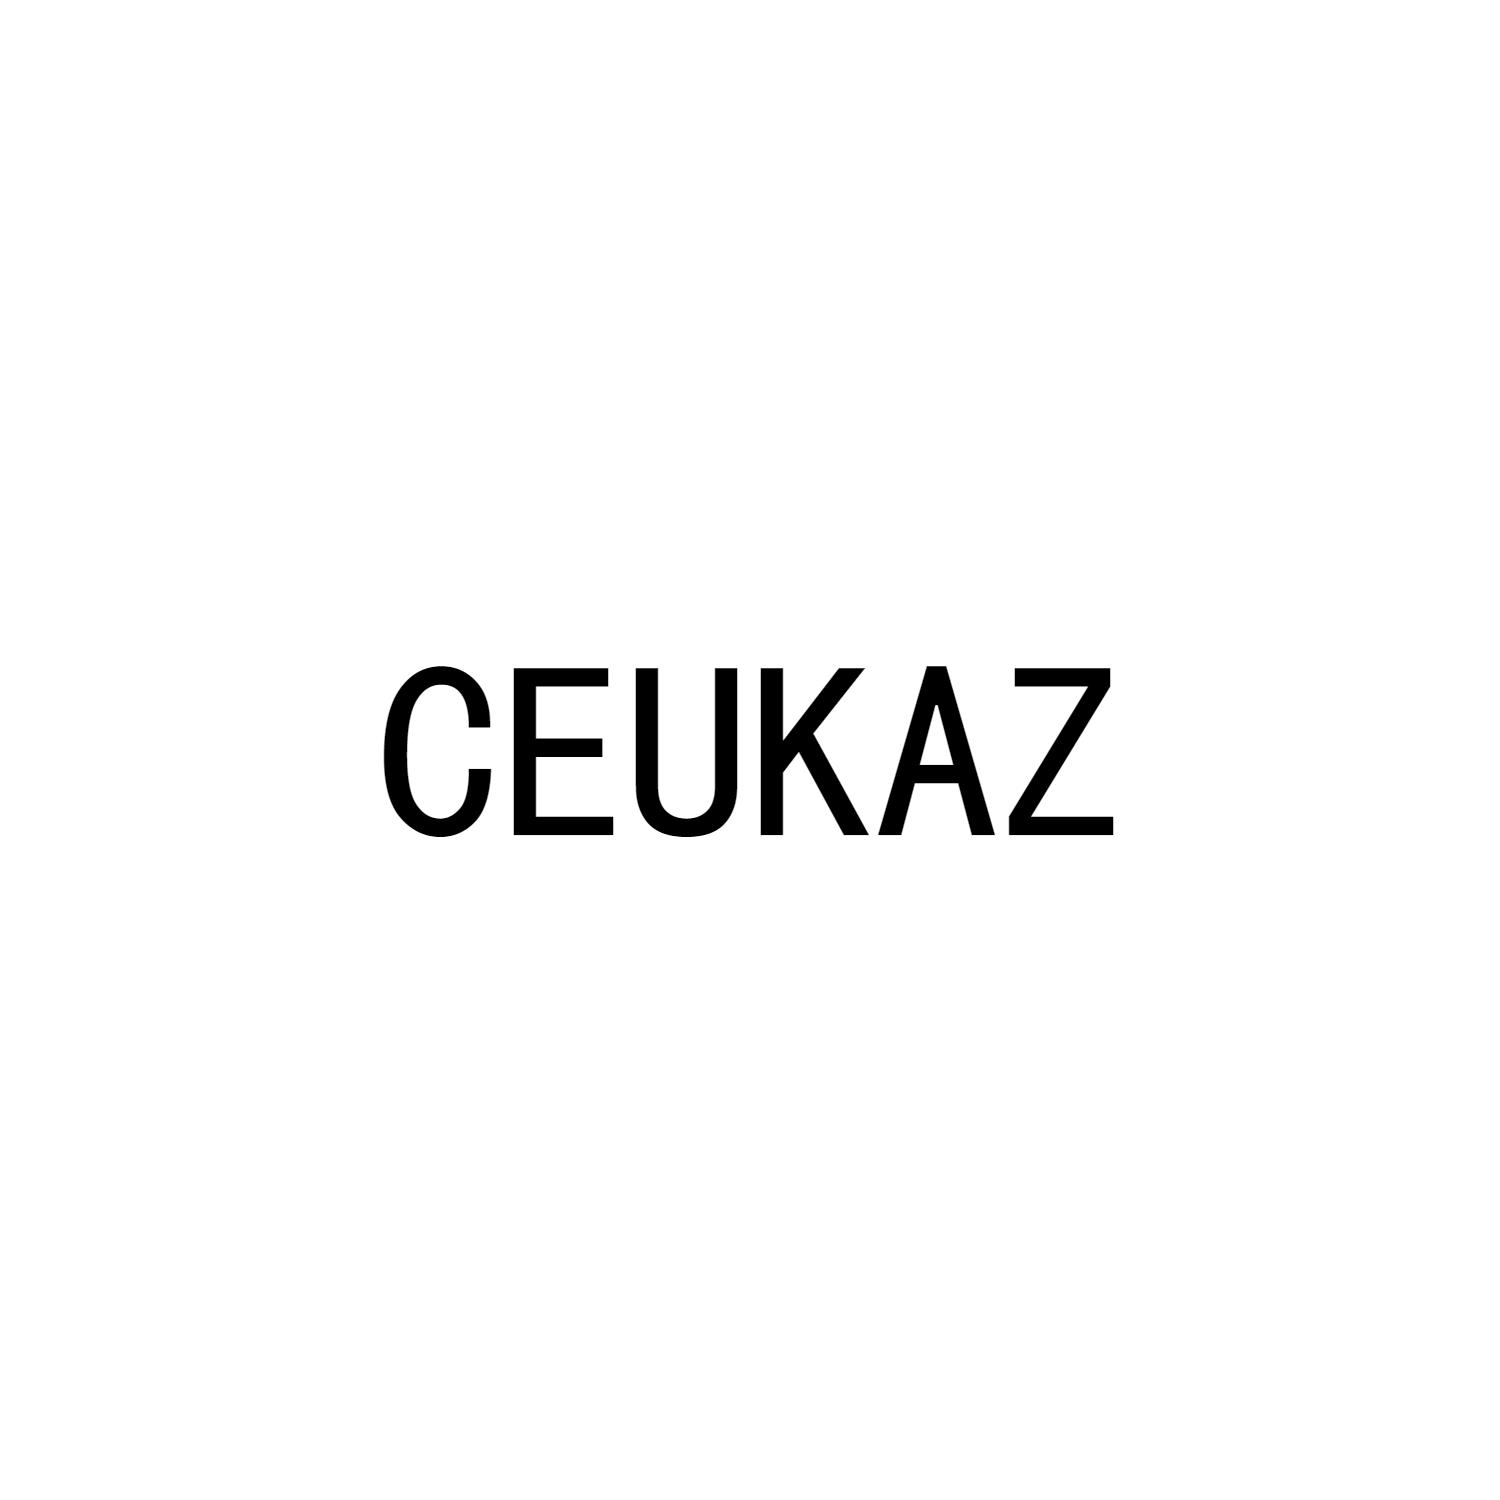 CEUKAZ